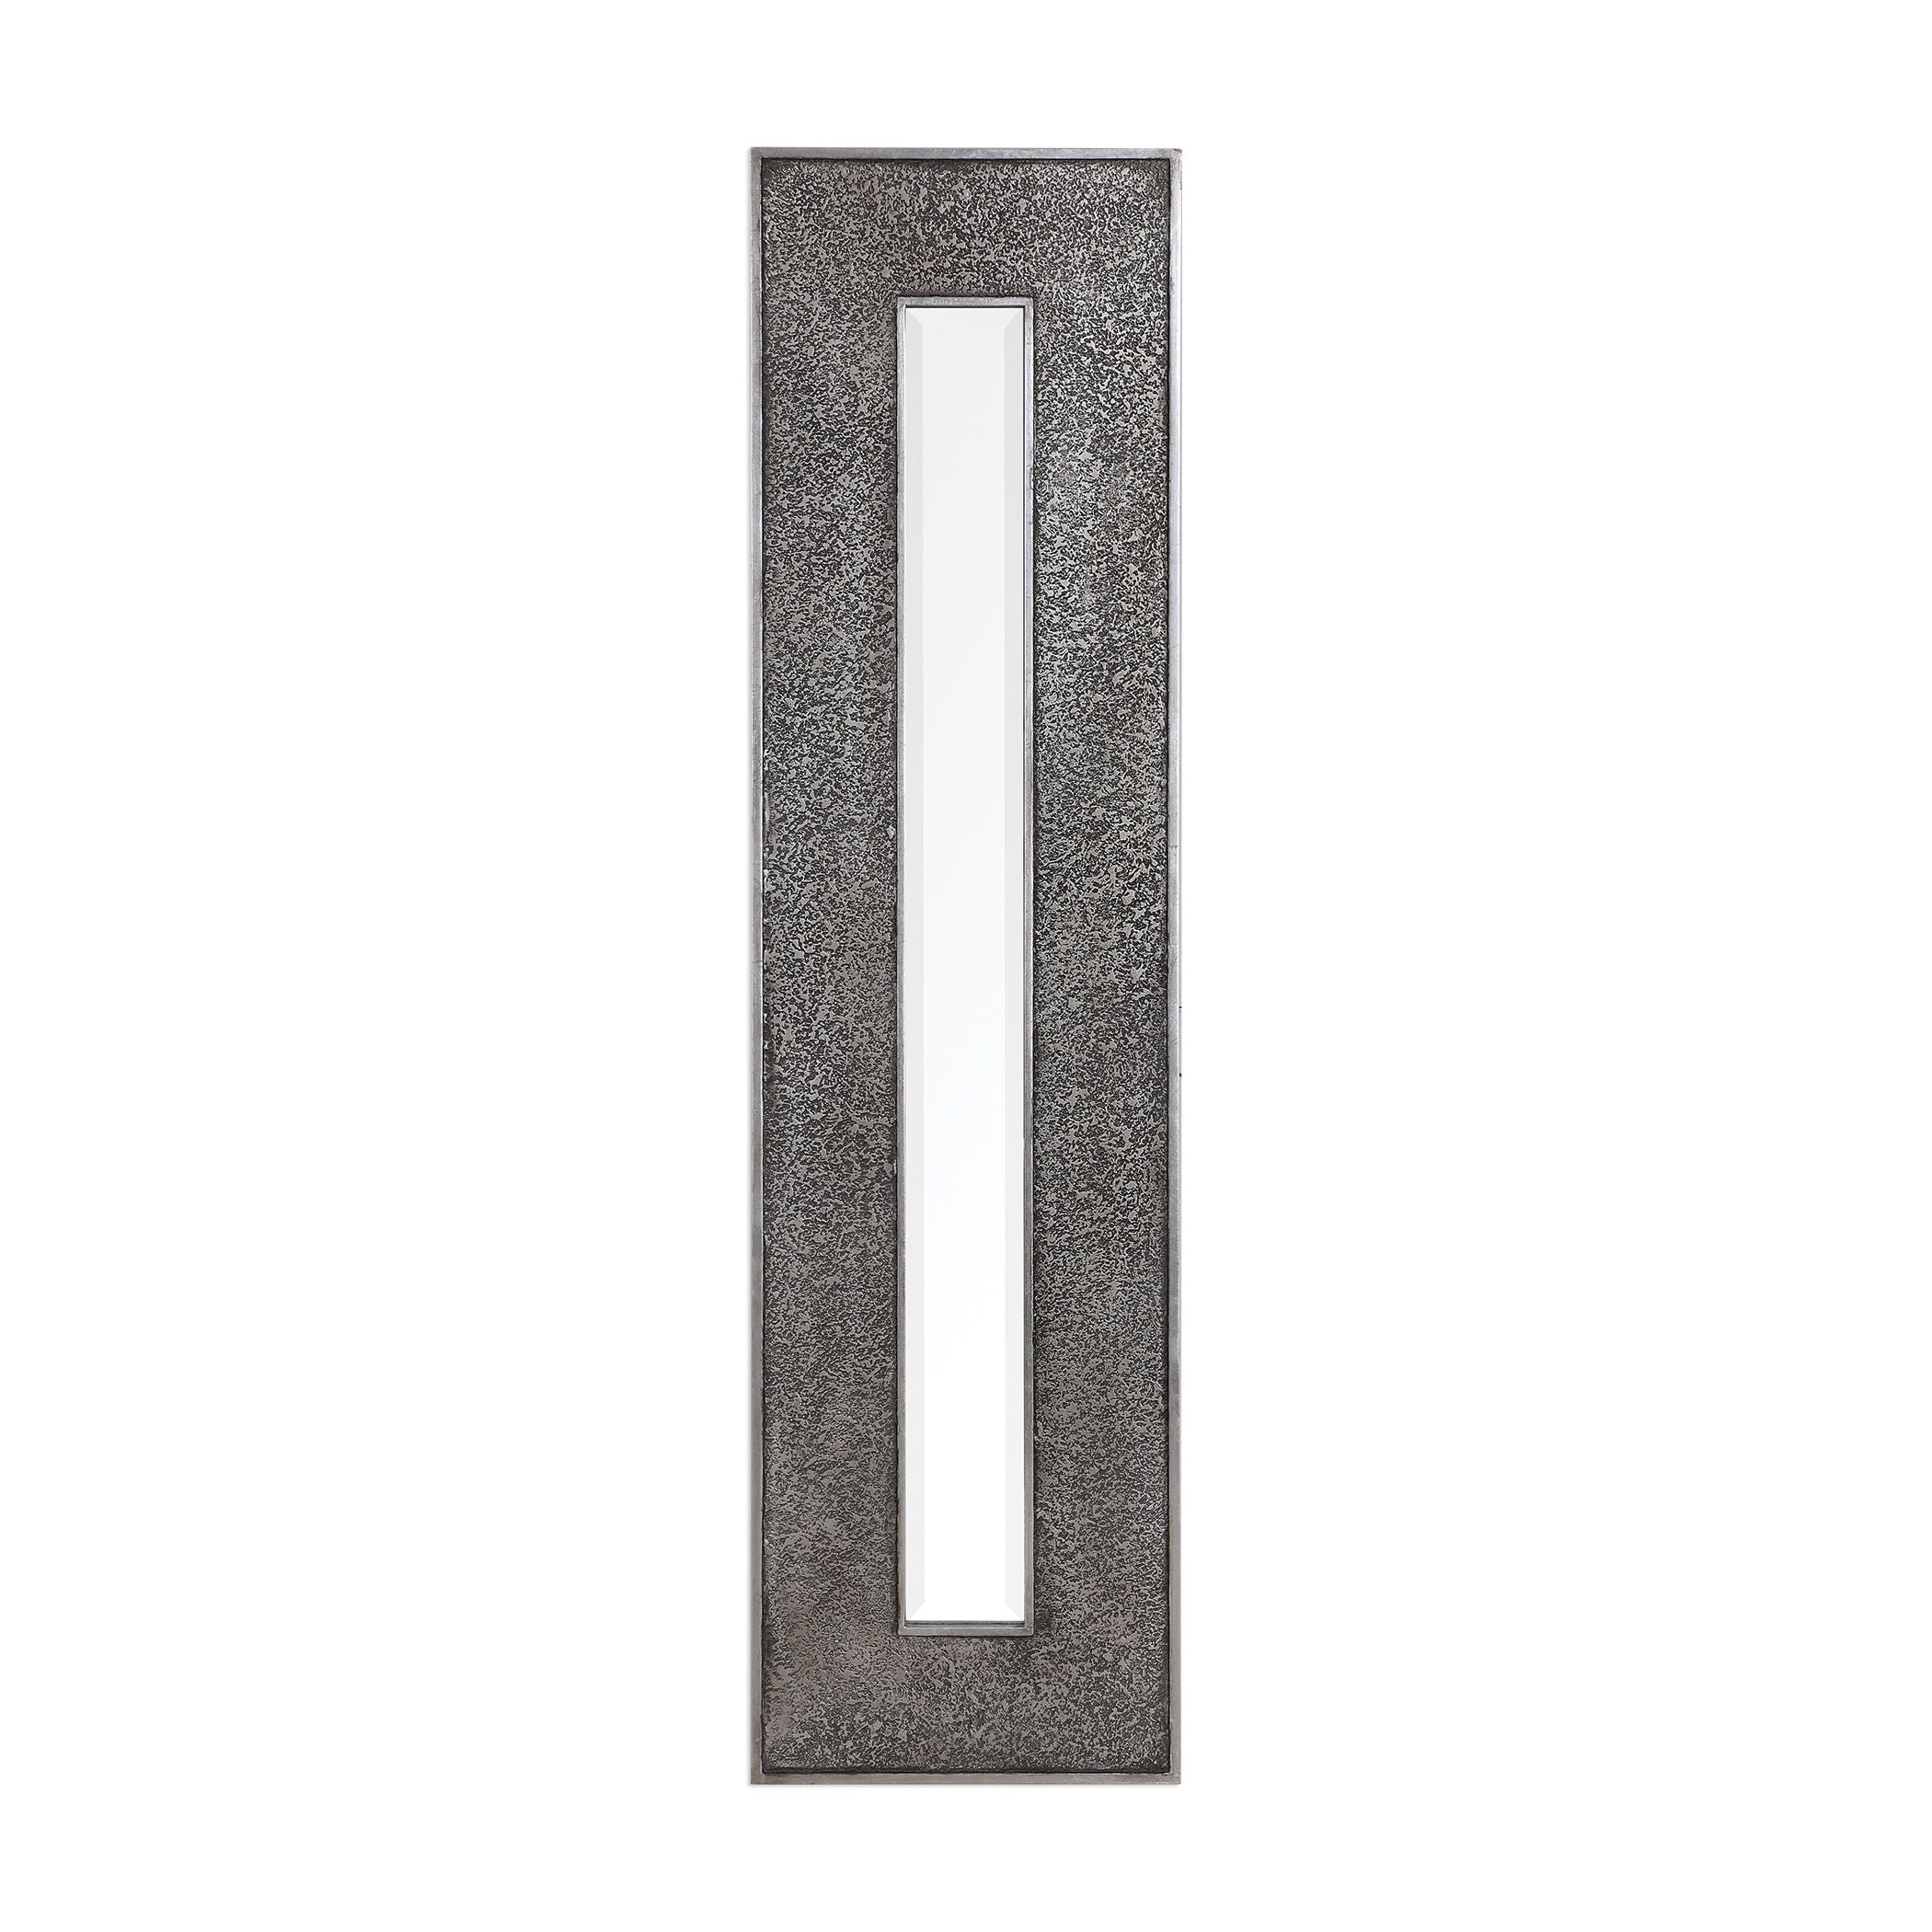 Bannon - Tall Metallic Mirror - Dark Gray